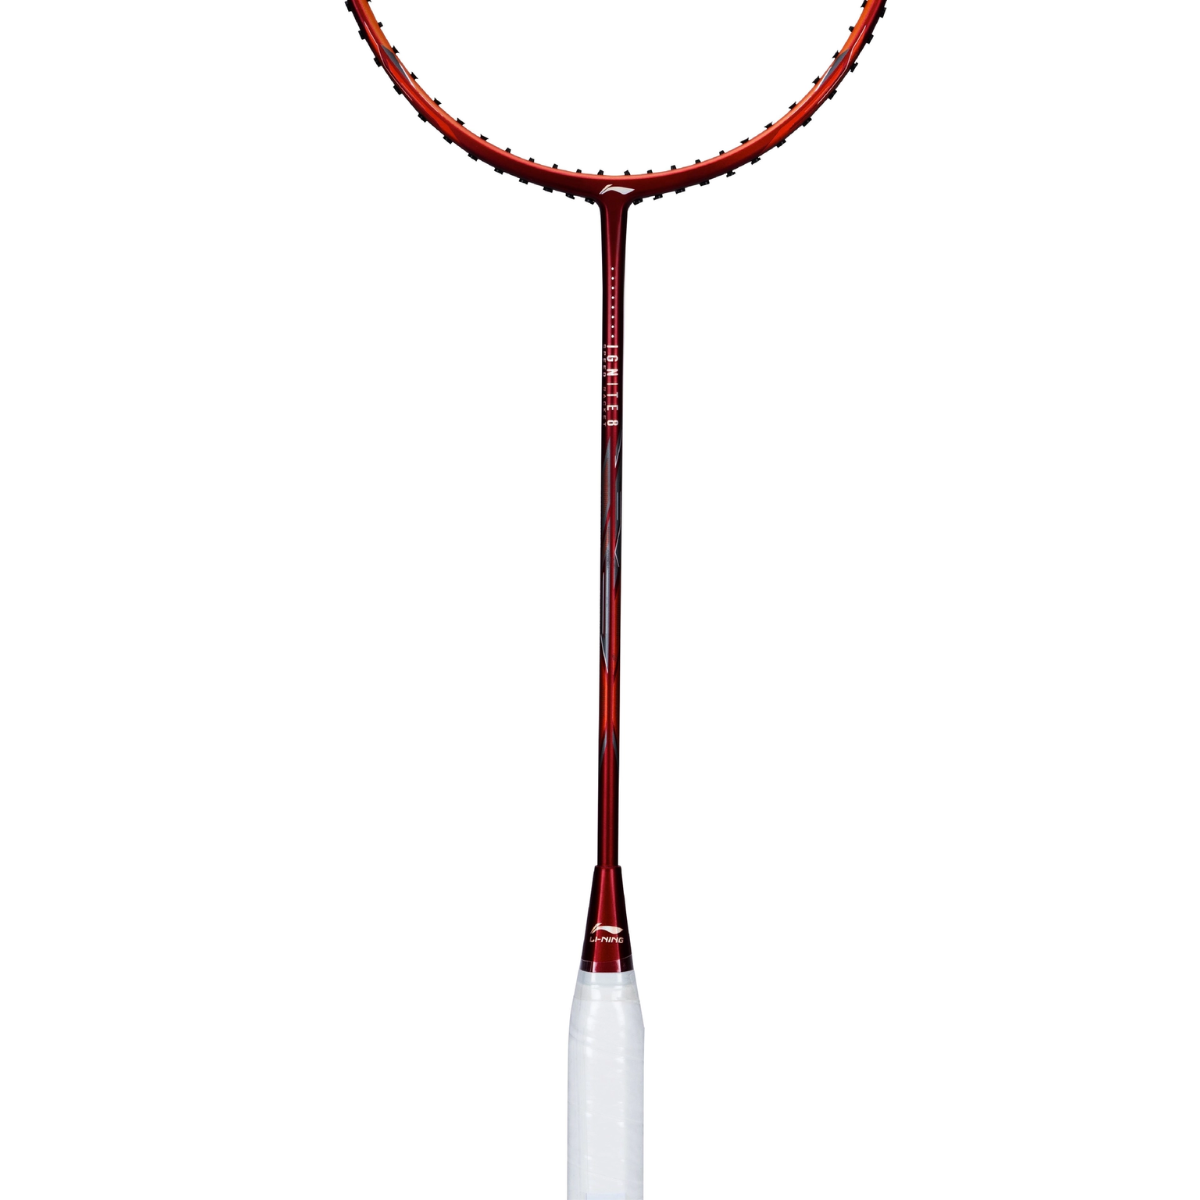 Li-Ning Ignite 8 Strung Badminton Racket